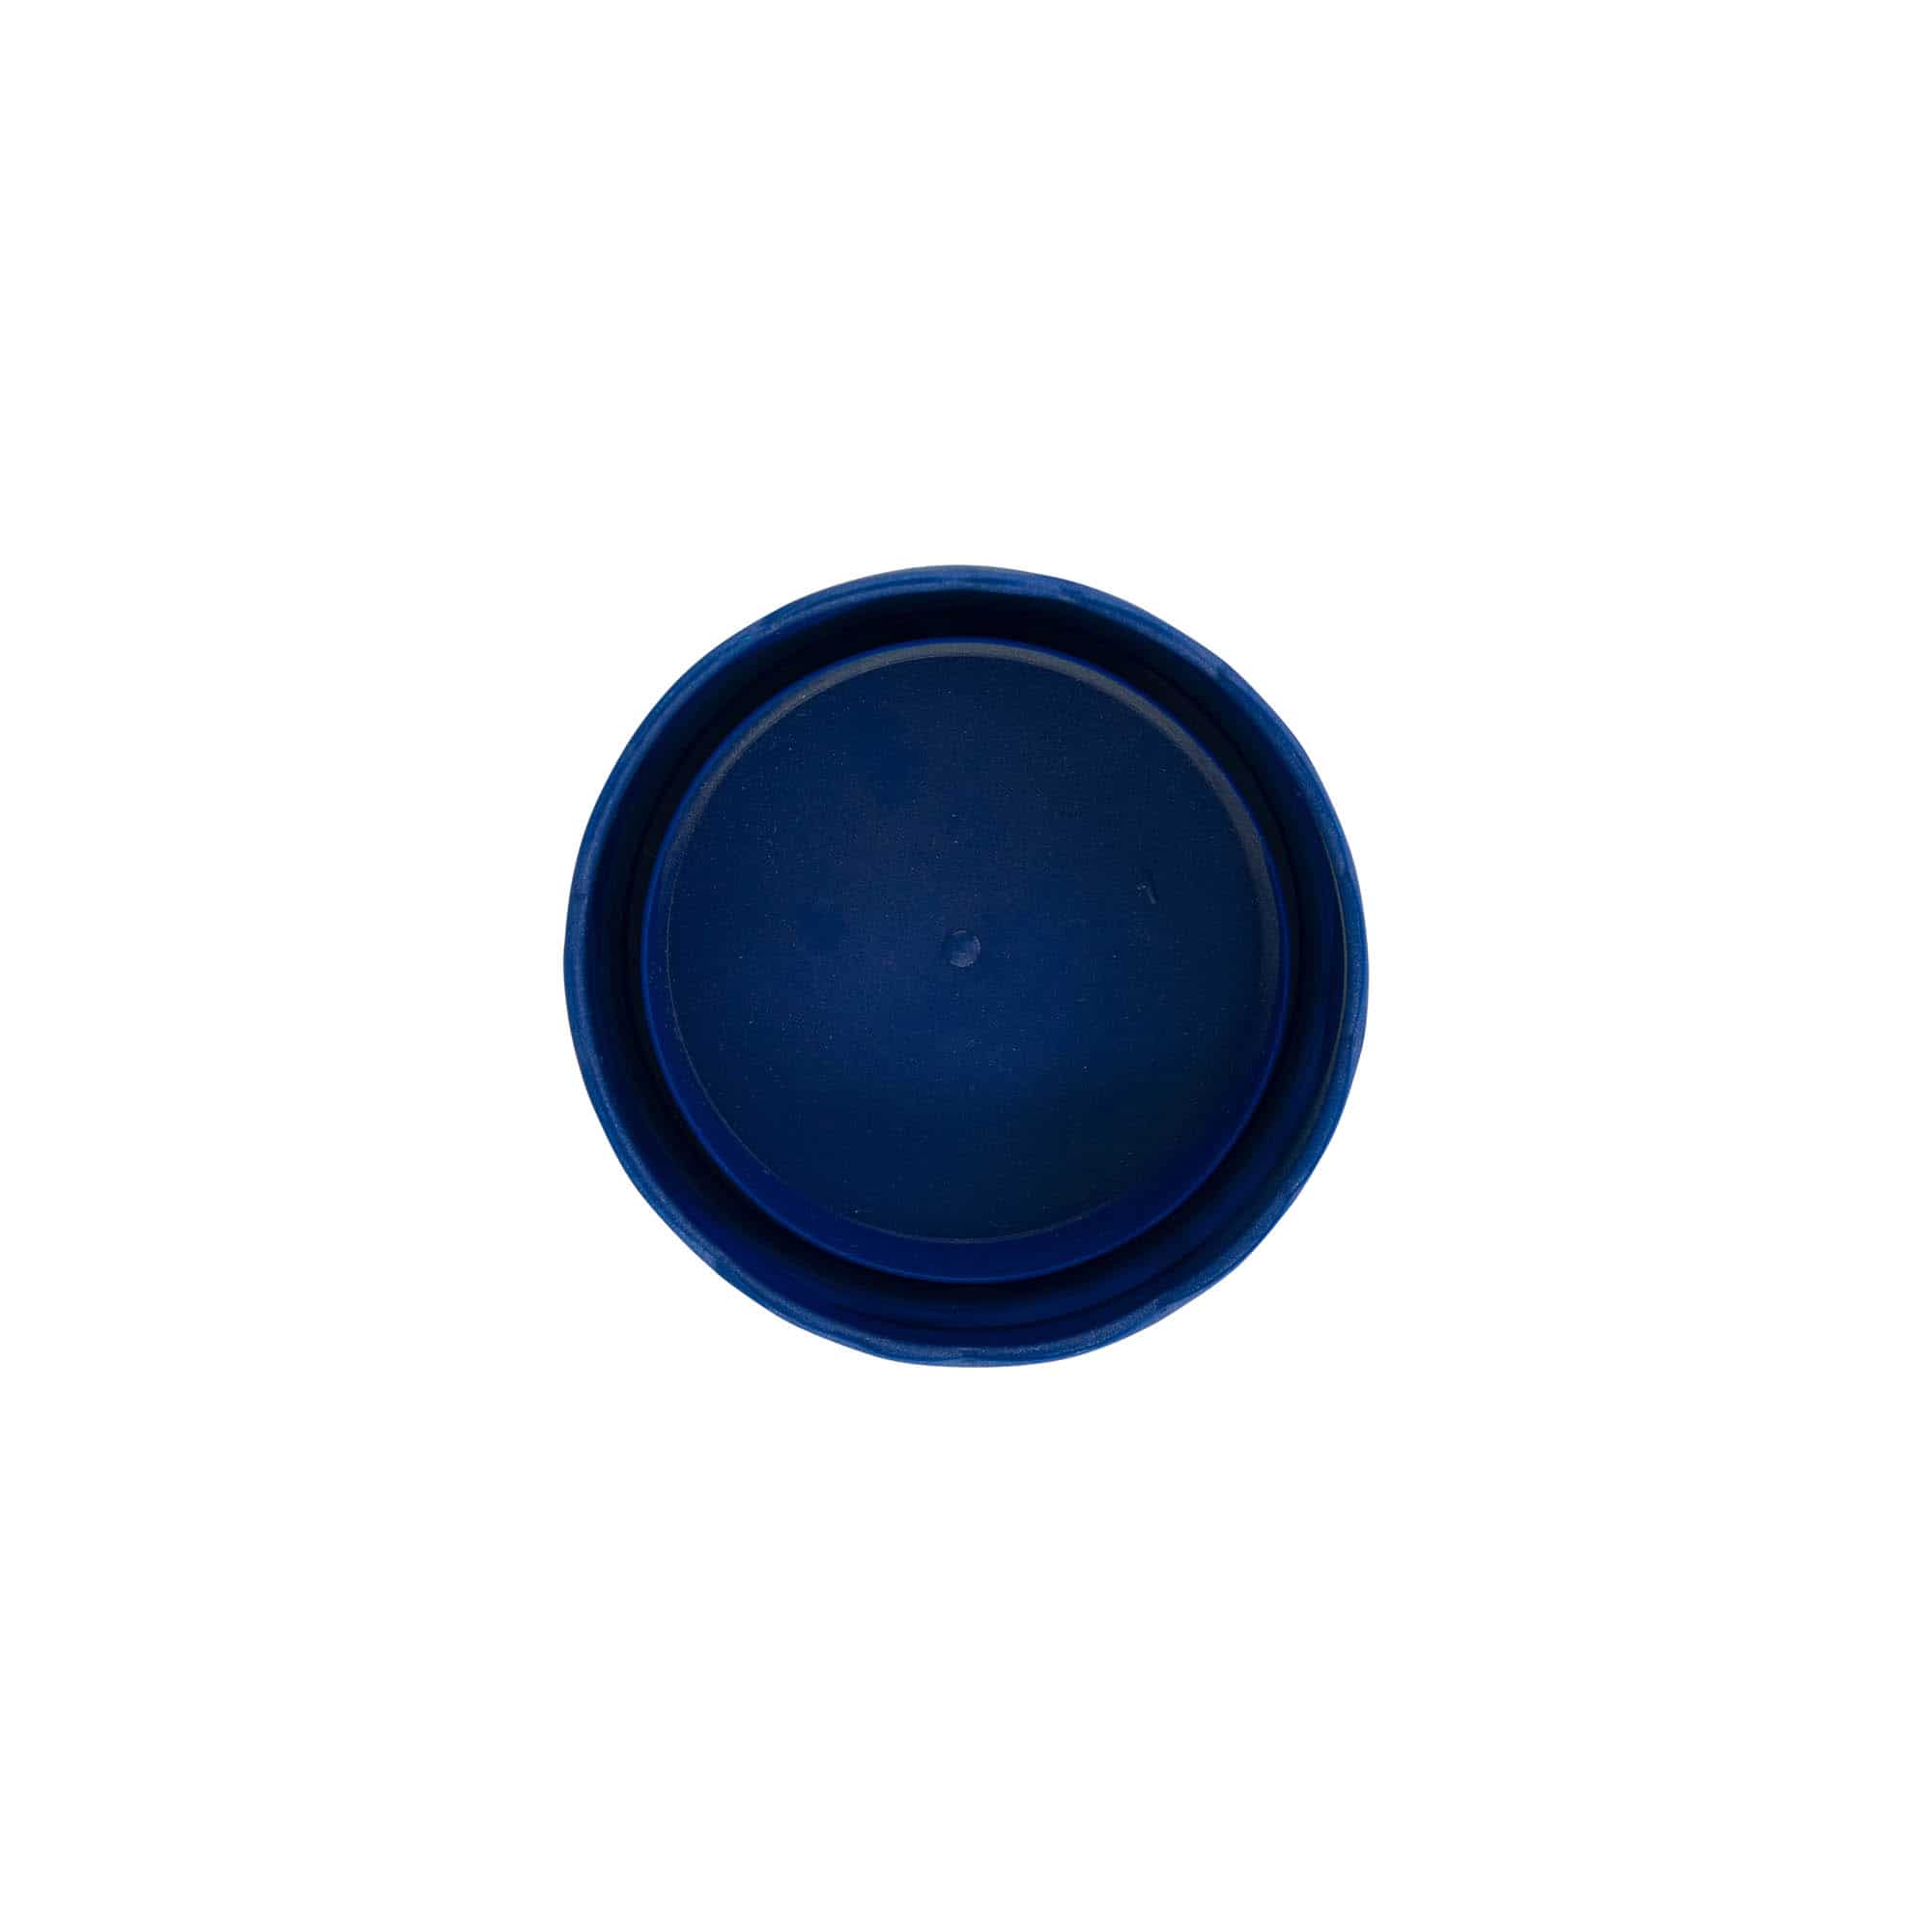 Stulpdeksel voor keramische pot met smalle hals, HDPE-kunststof, blauw